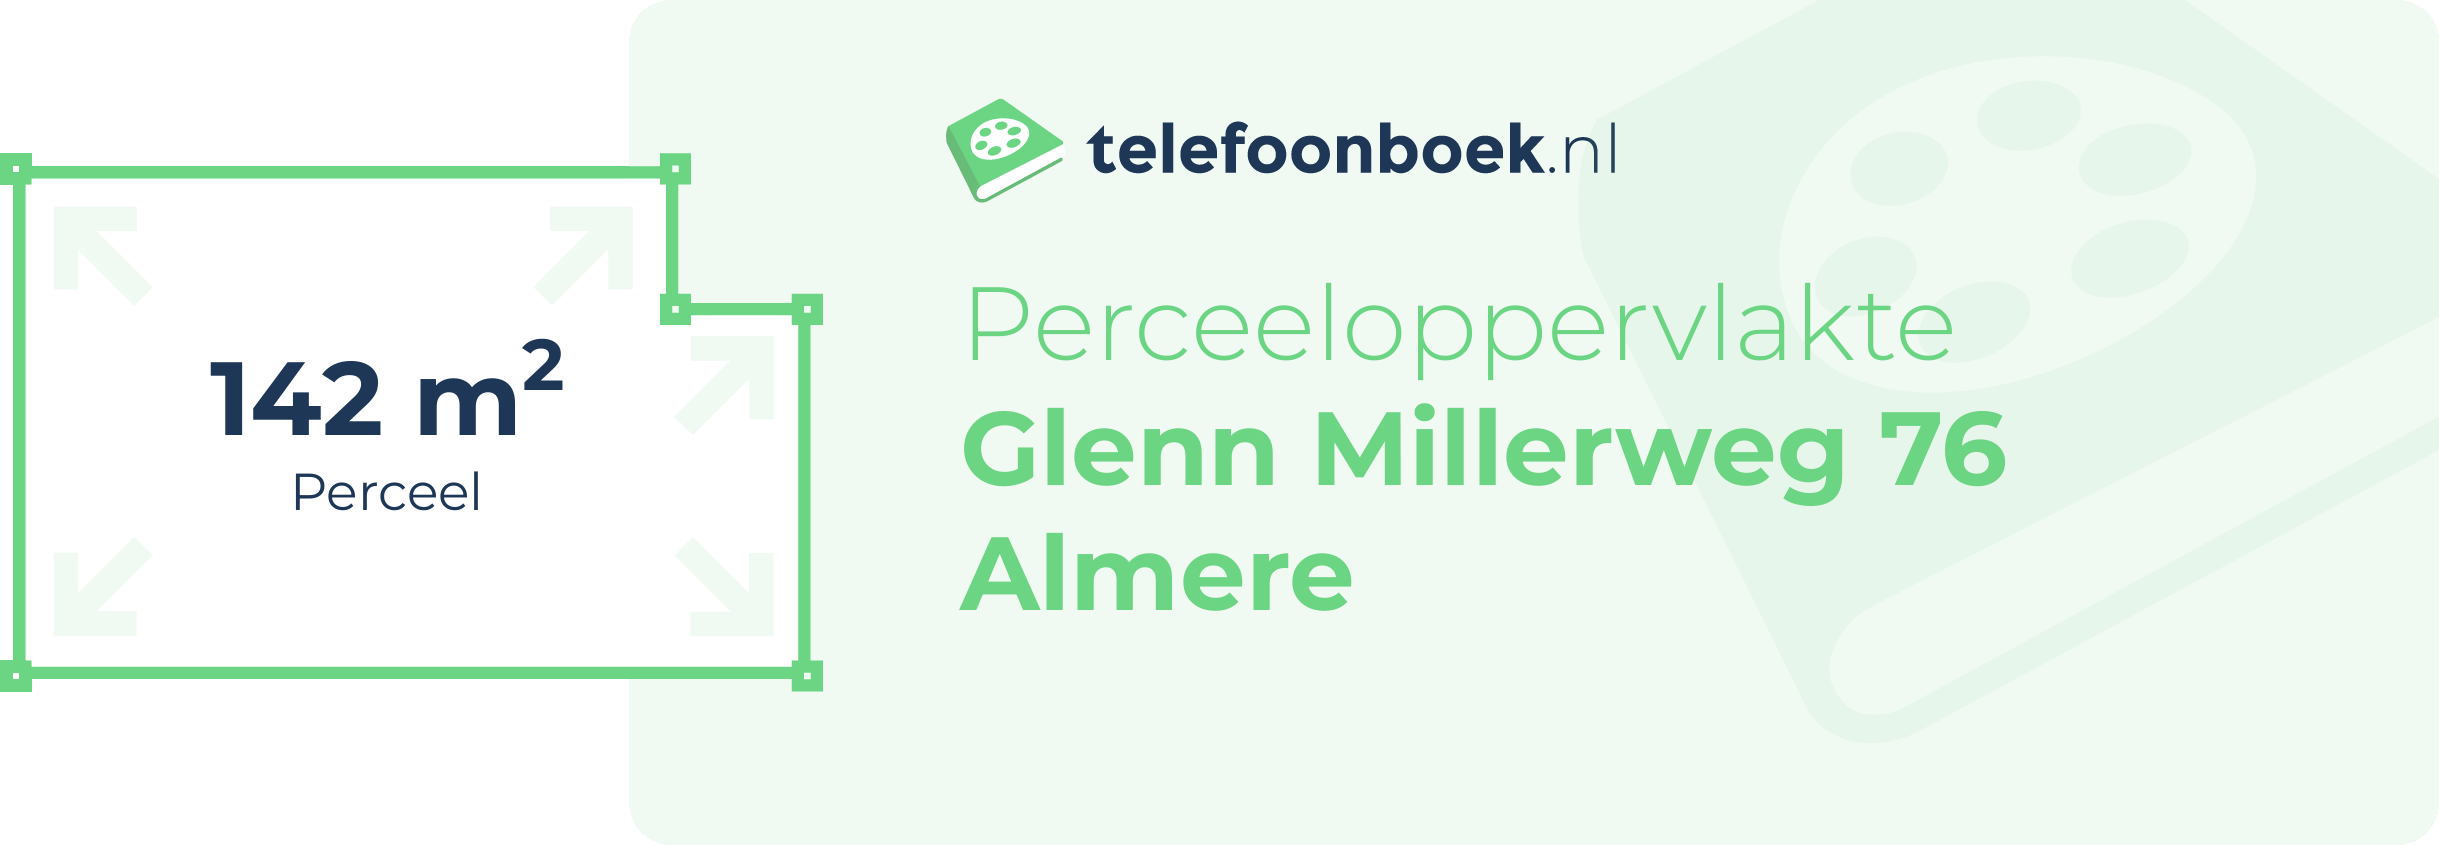 Perceeloppervlakte Glenn Millerweg 76 Almere